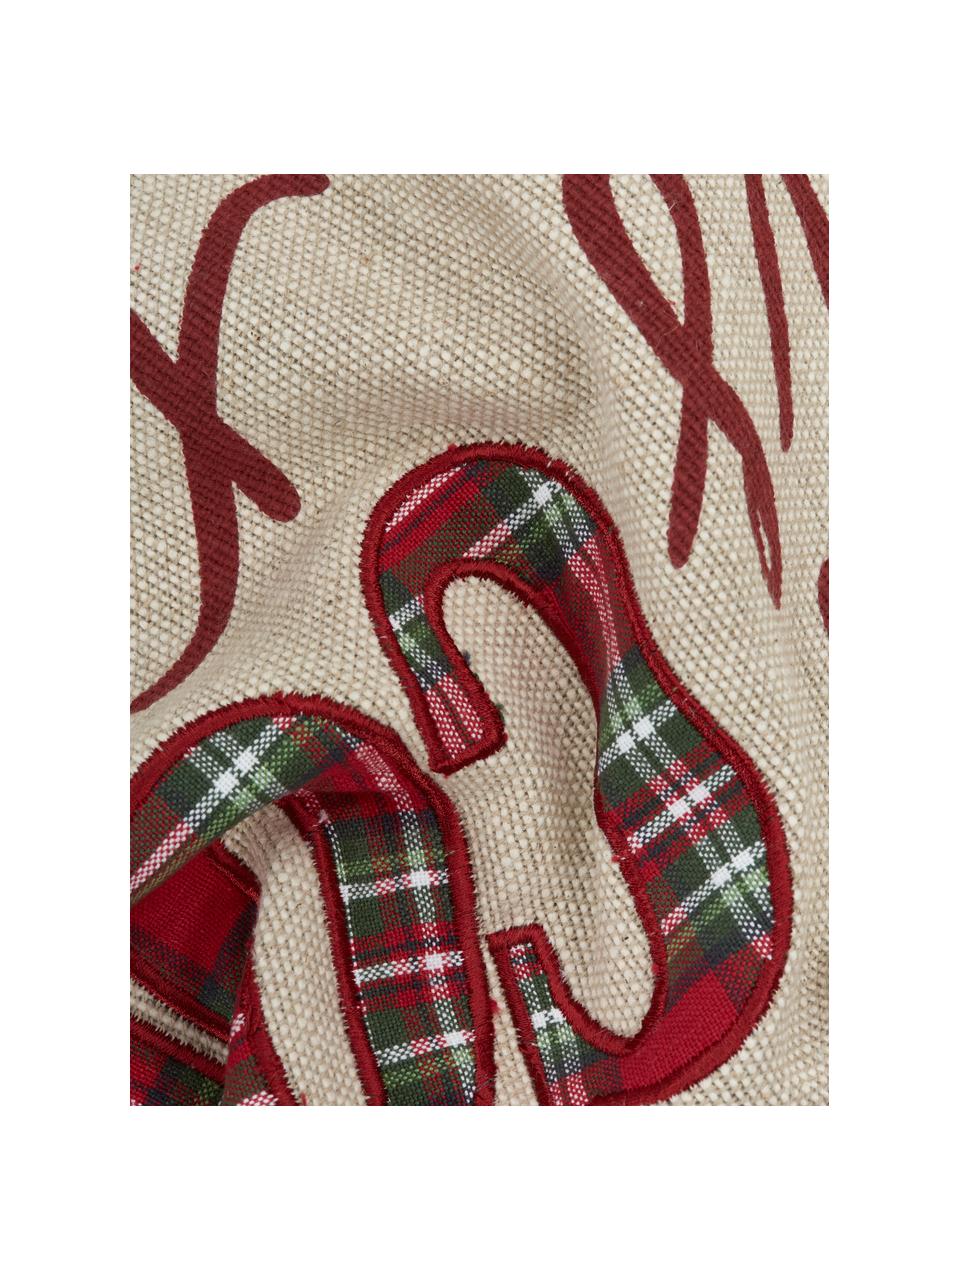 Dwustronna poszewka na poduszkę Chilly, 100% bawełna, Beżowy, czerwony, zielony, S 45 x D 45 cm